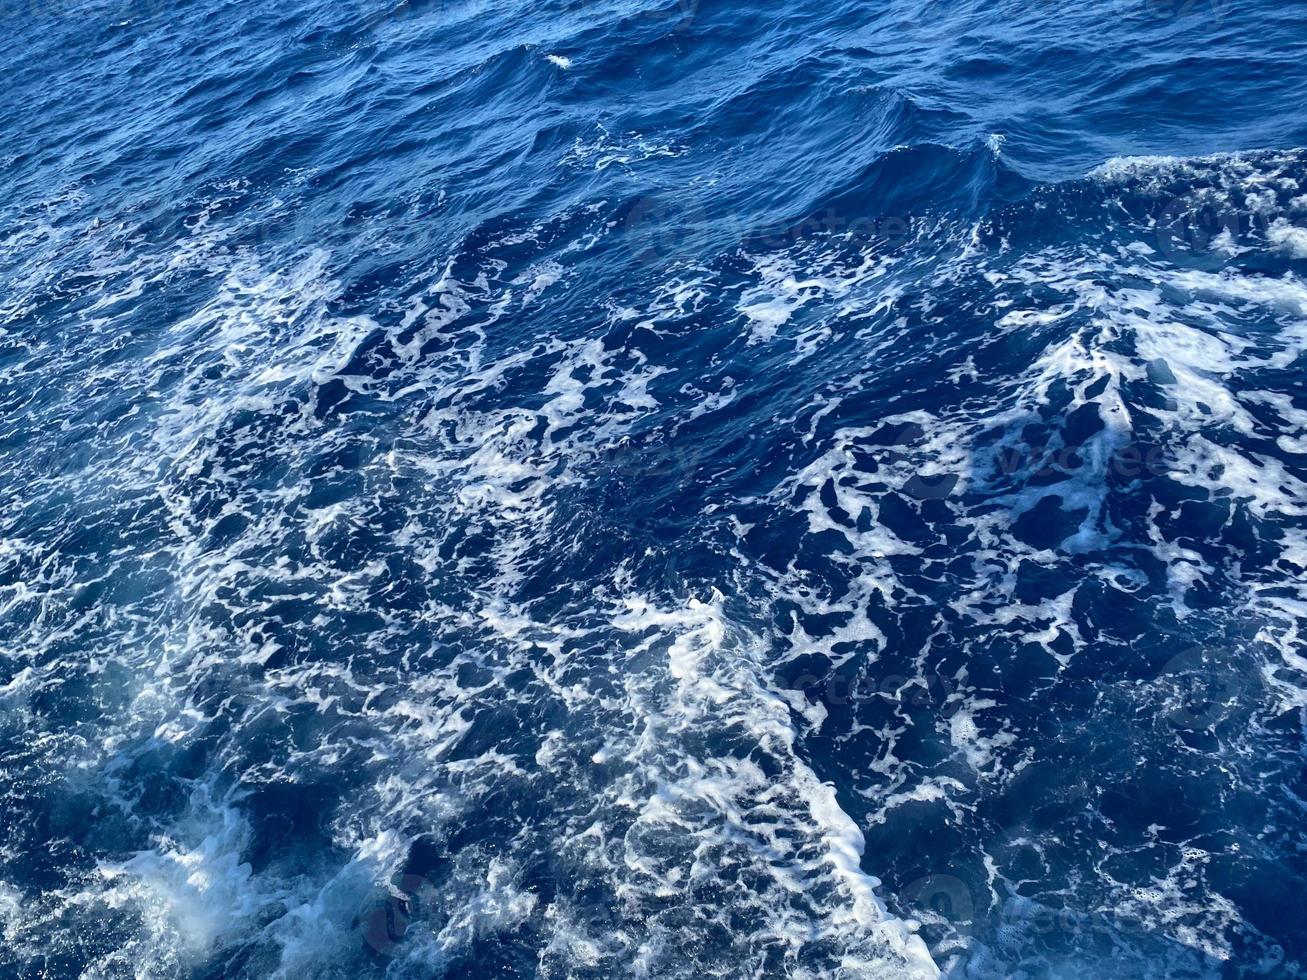 mer méditerranée turquoise et bleu profond rugueux avec fond de texture de mousse blanche photo